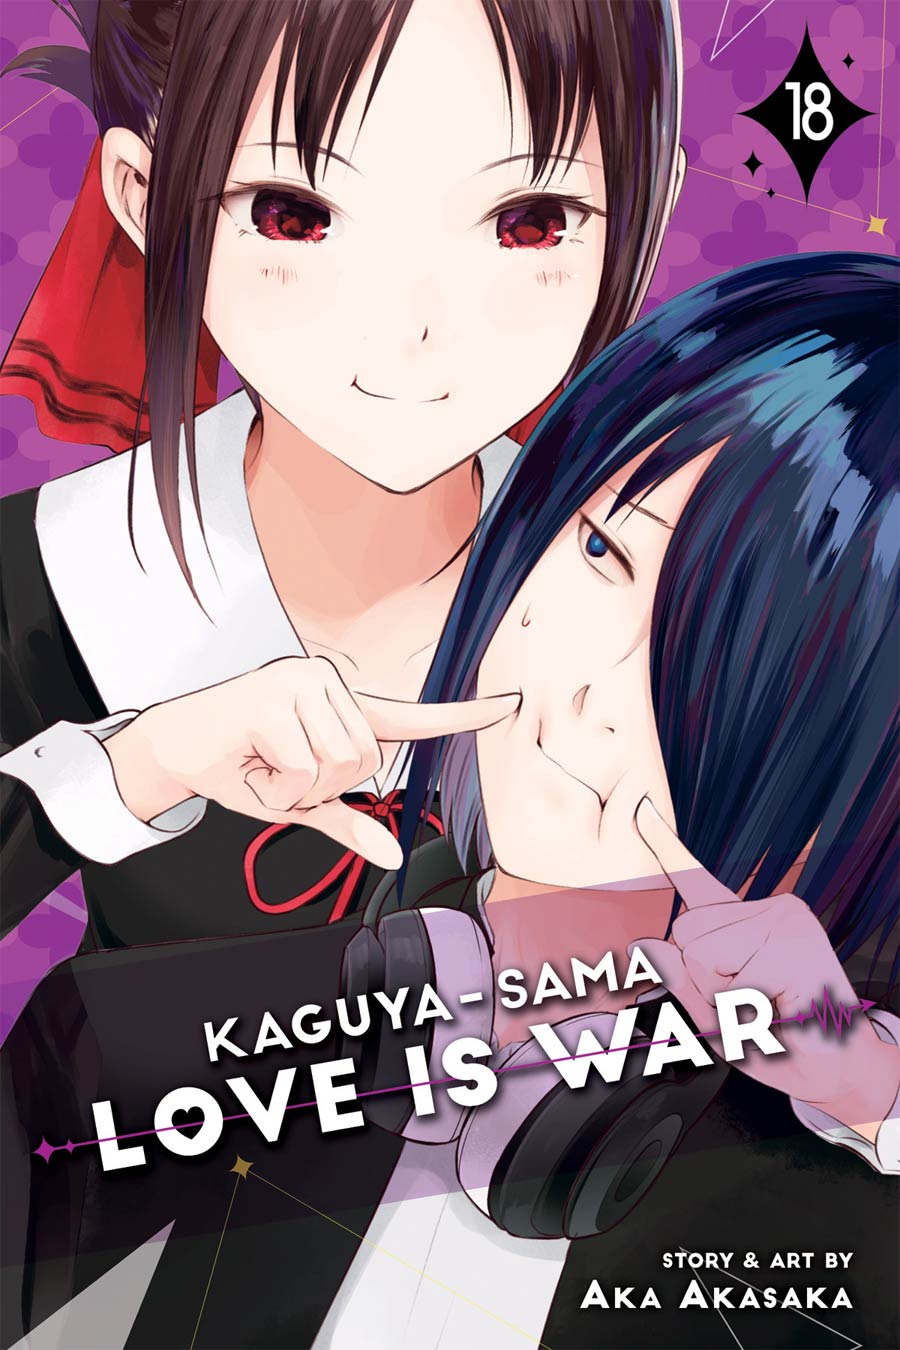 Kaguya-Sama Love Is War Vol 18 GN